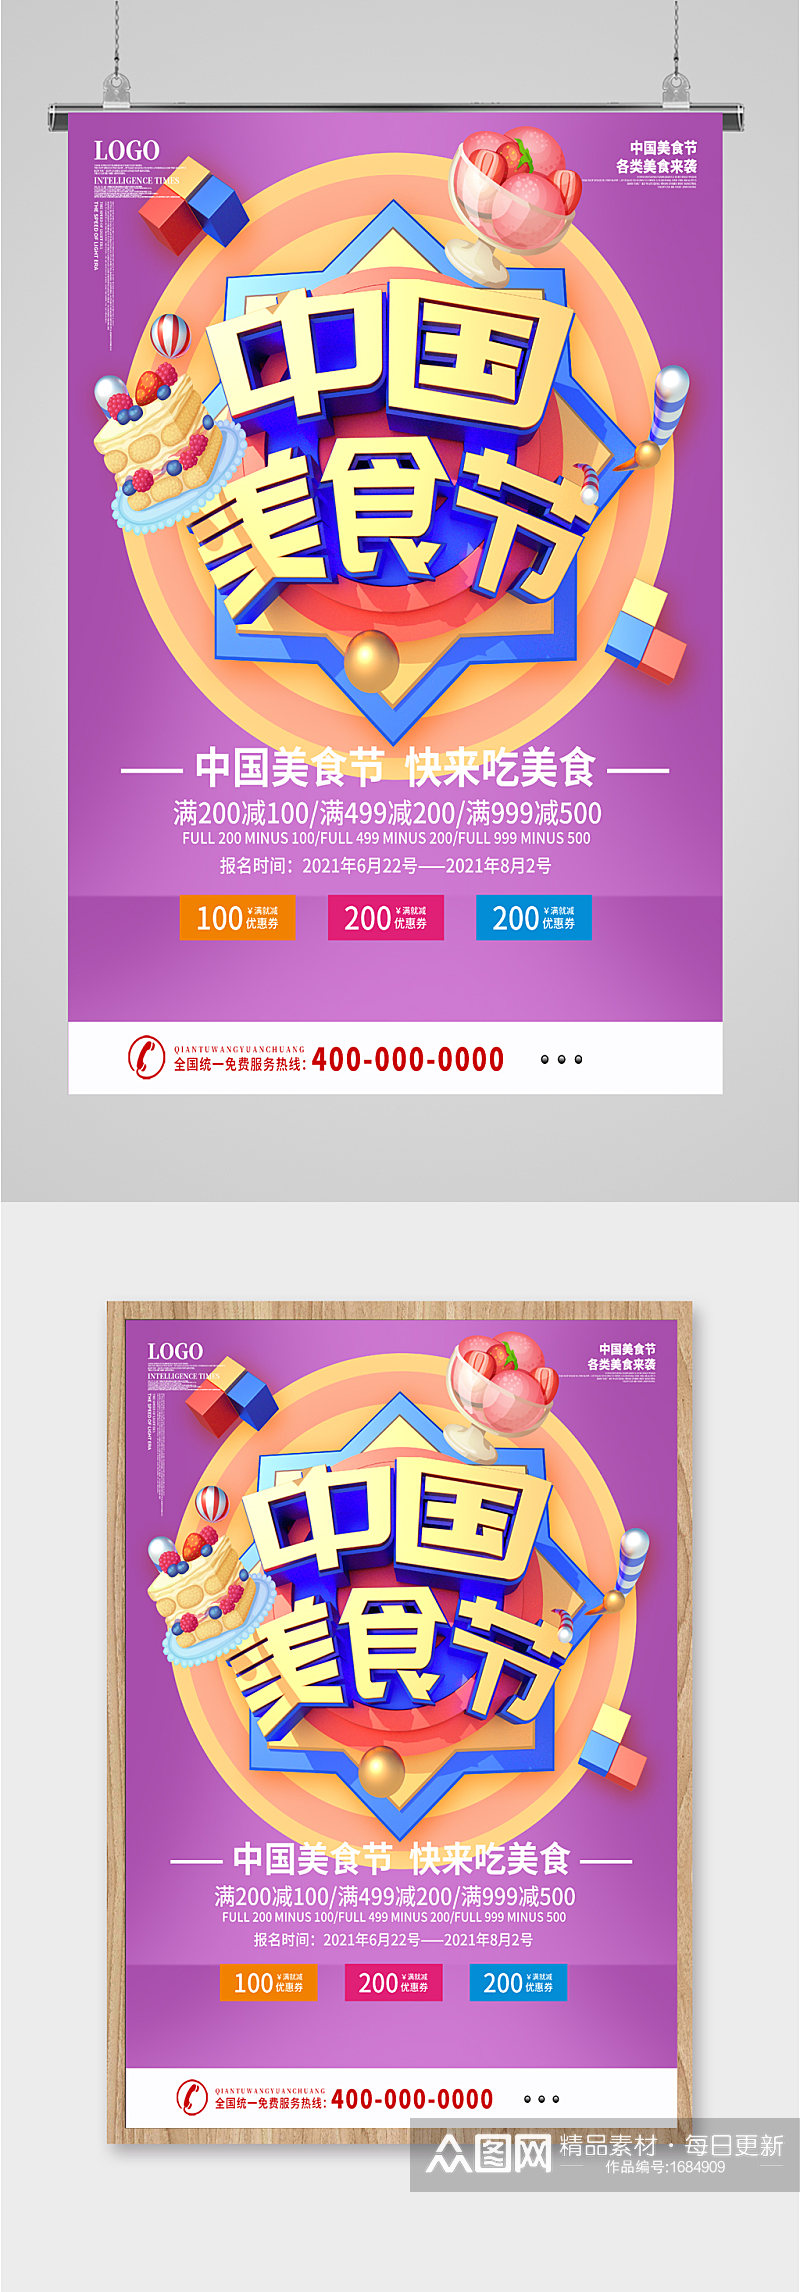 中国美食节宣传海报素材